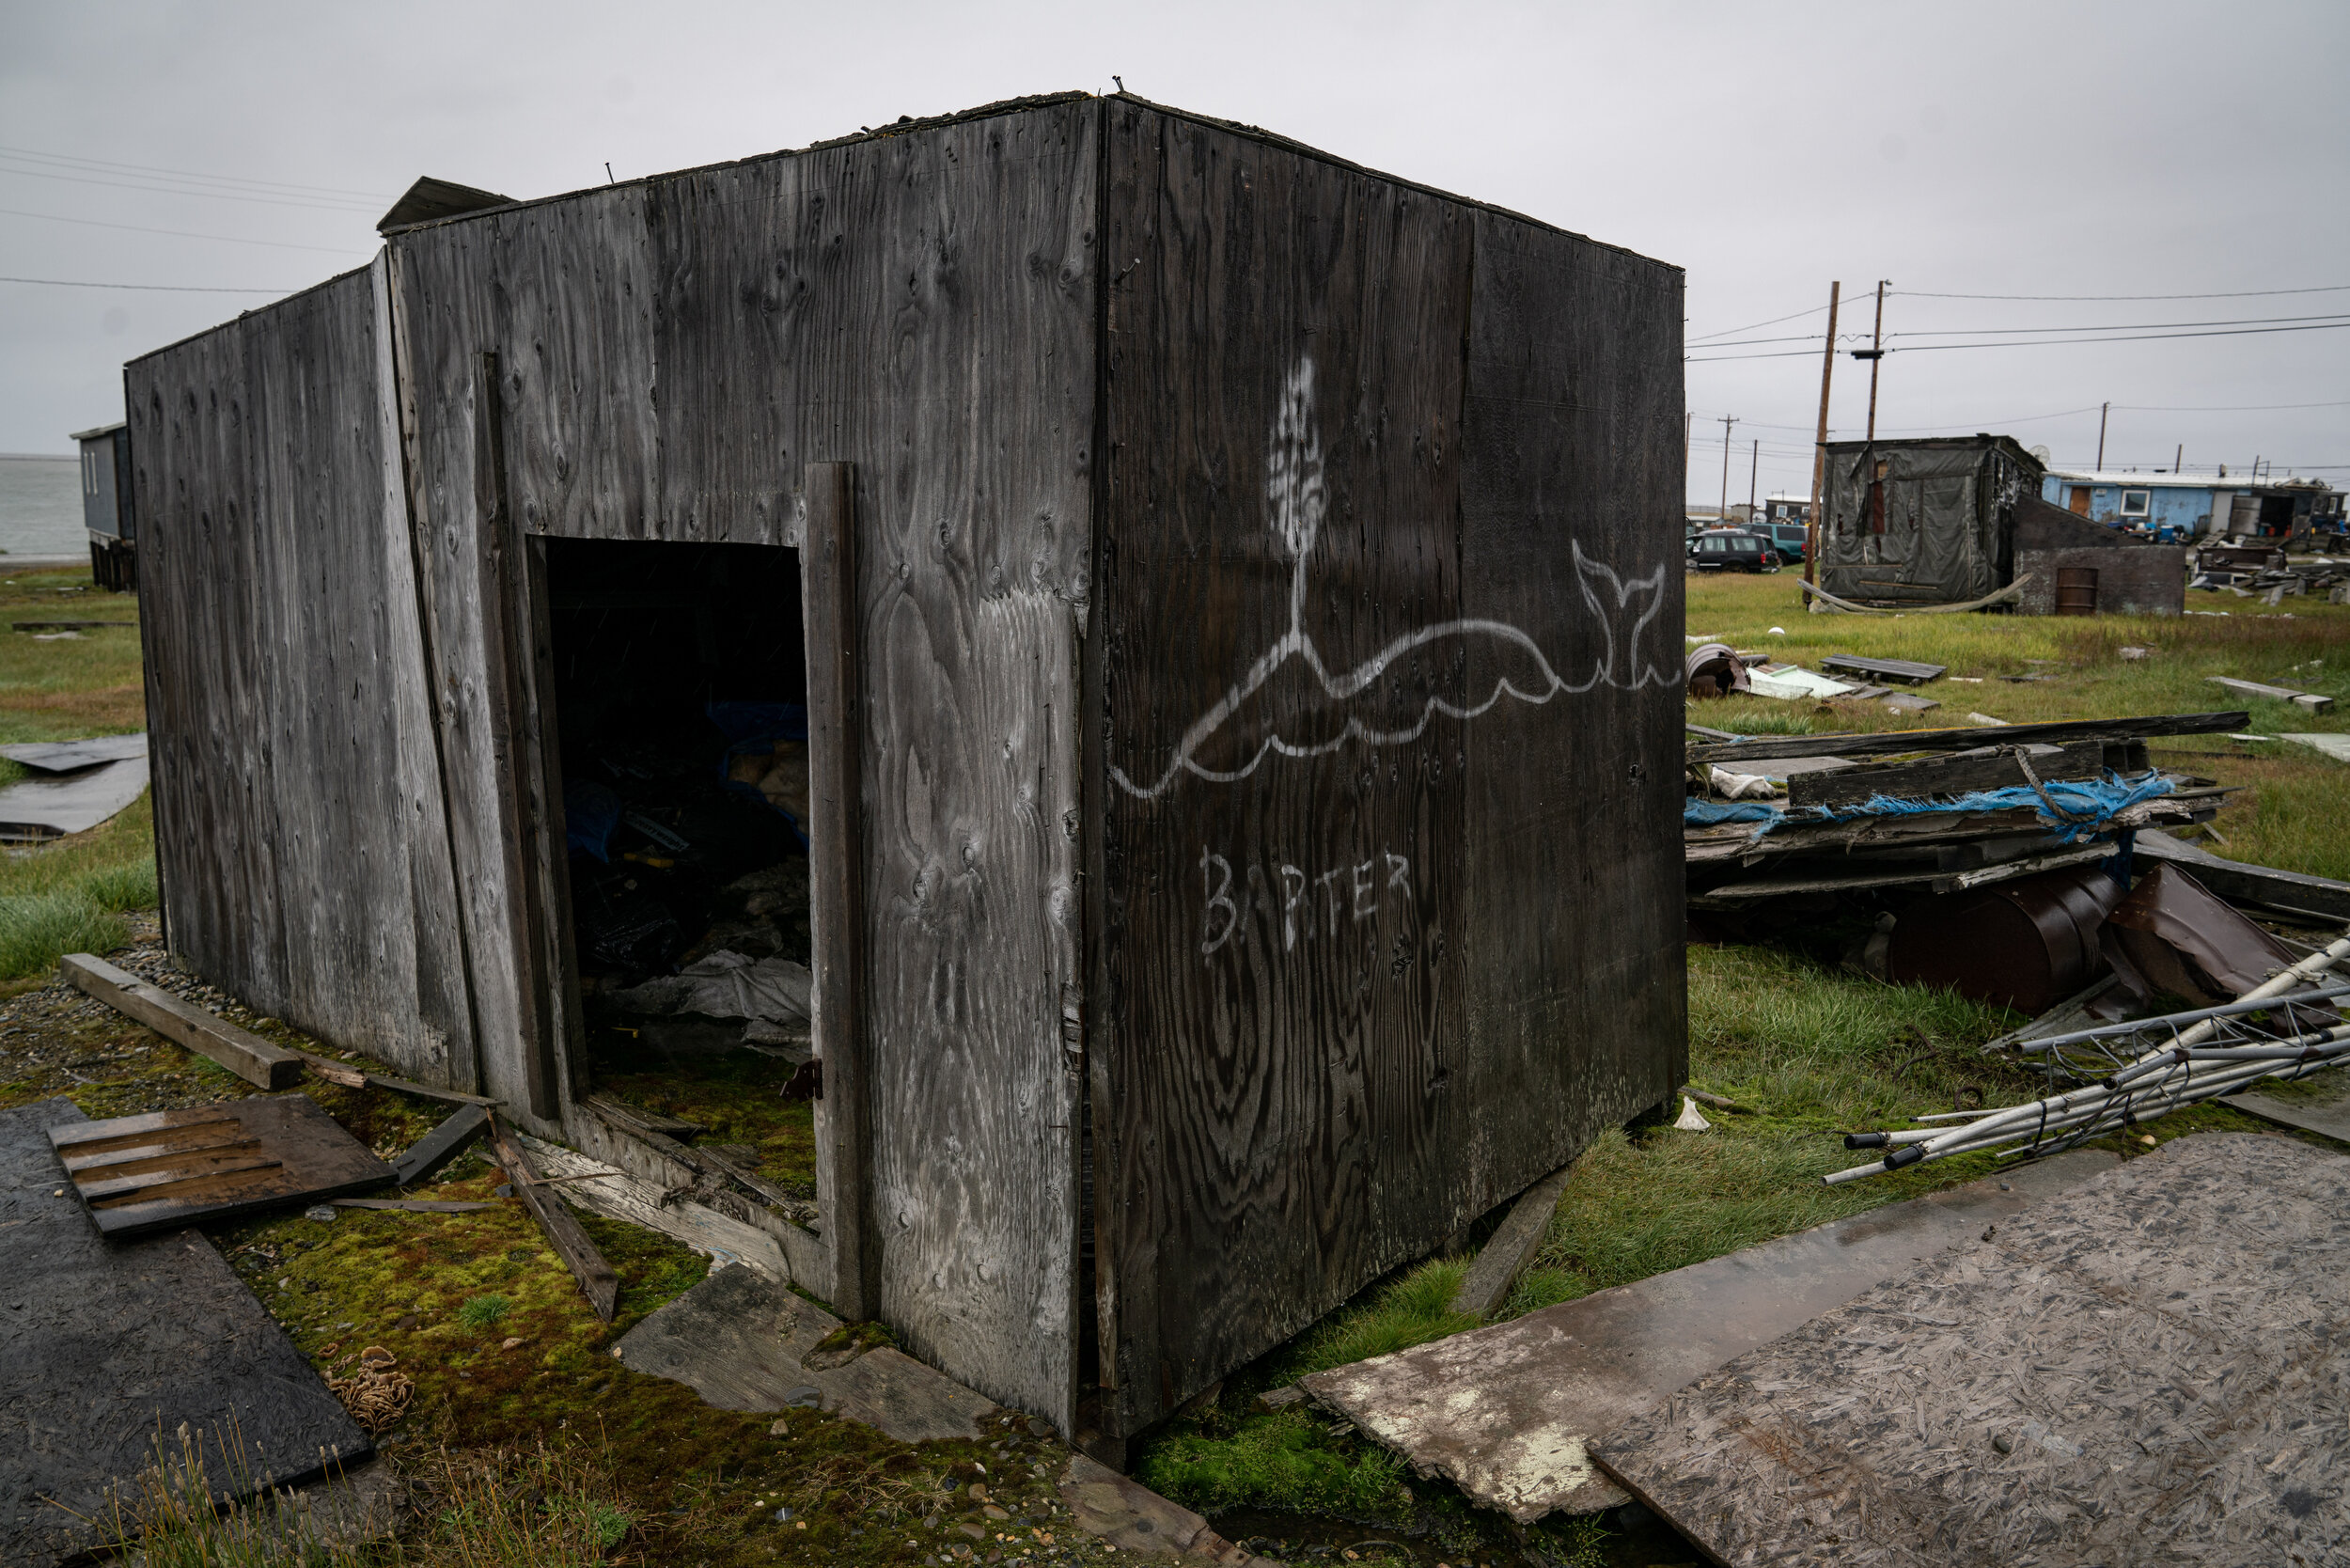 Whale art graffiti on side of hut.